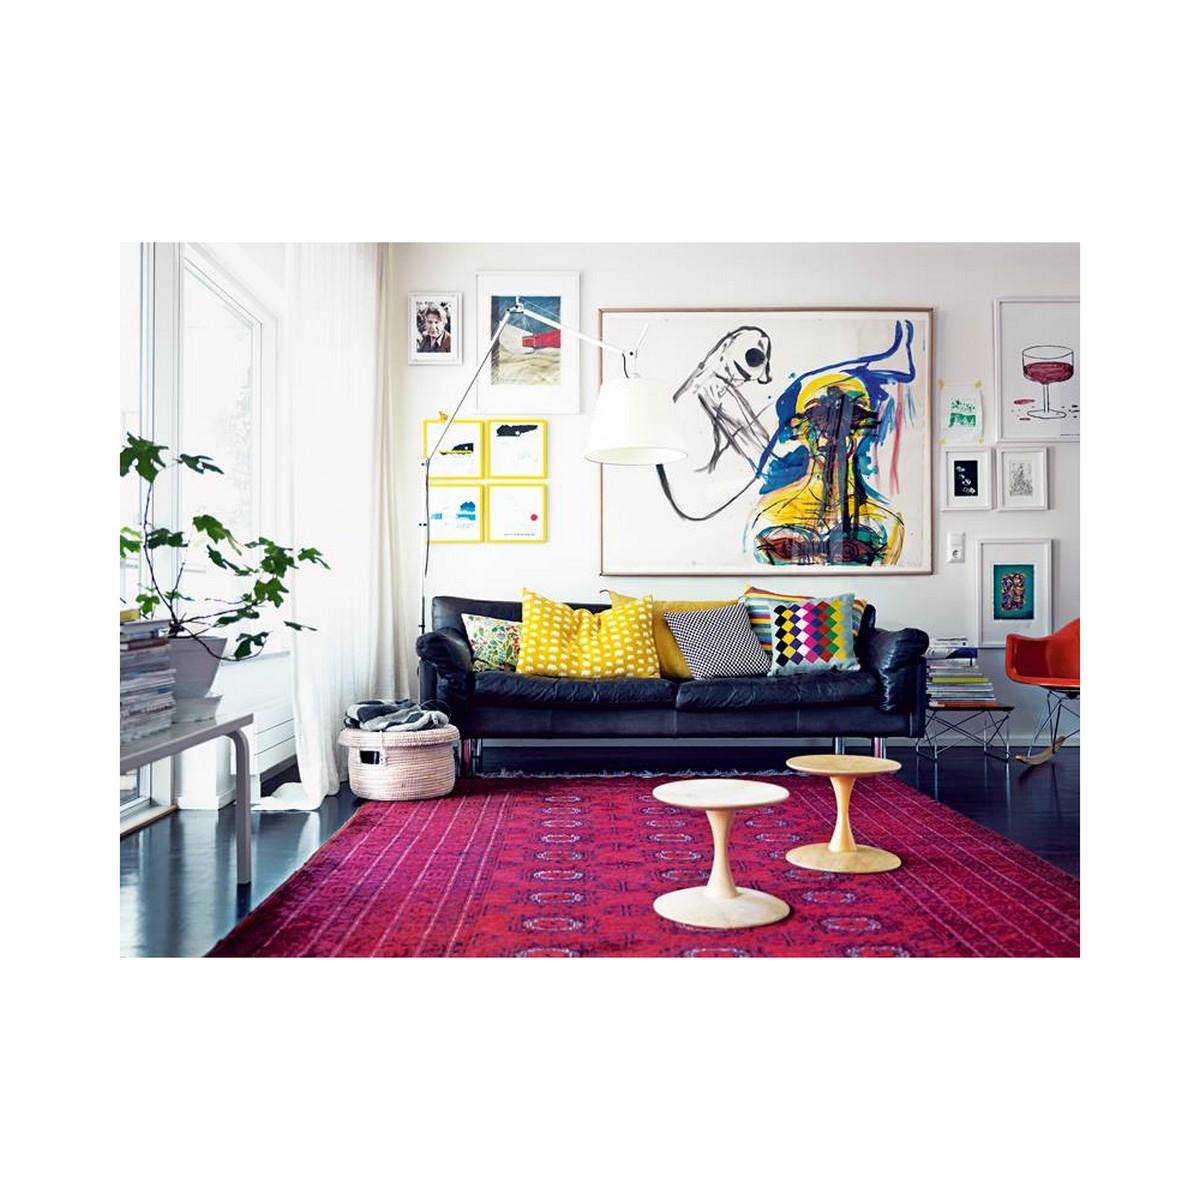 Wohnzimmer #hocker #teppich #ledersofa #pinkfarbenerteppich #sofa #bunterstuhl #weißerhocker #schwarzesledersofa ©Agentur Grünauer